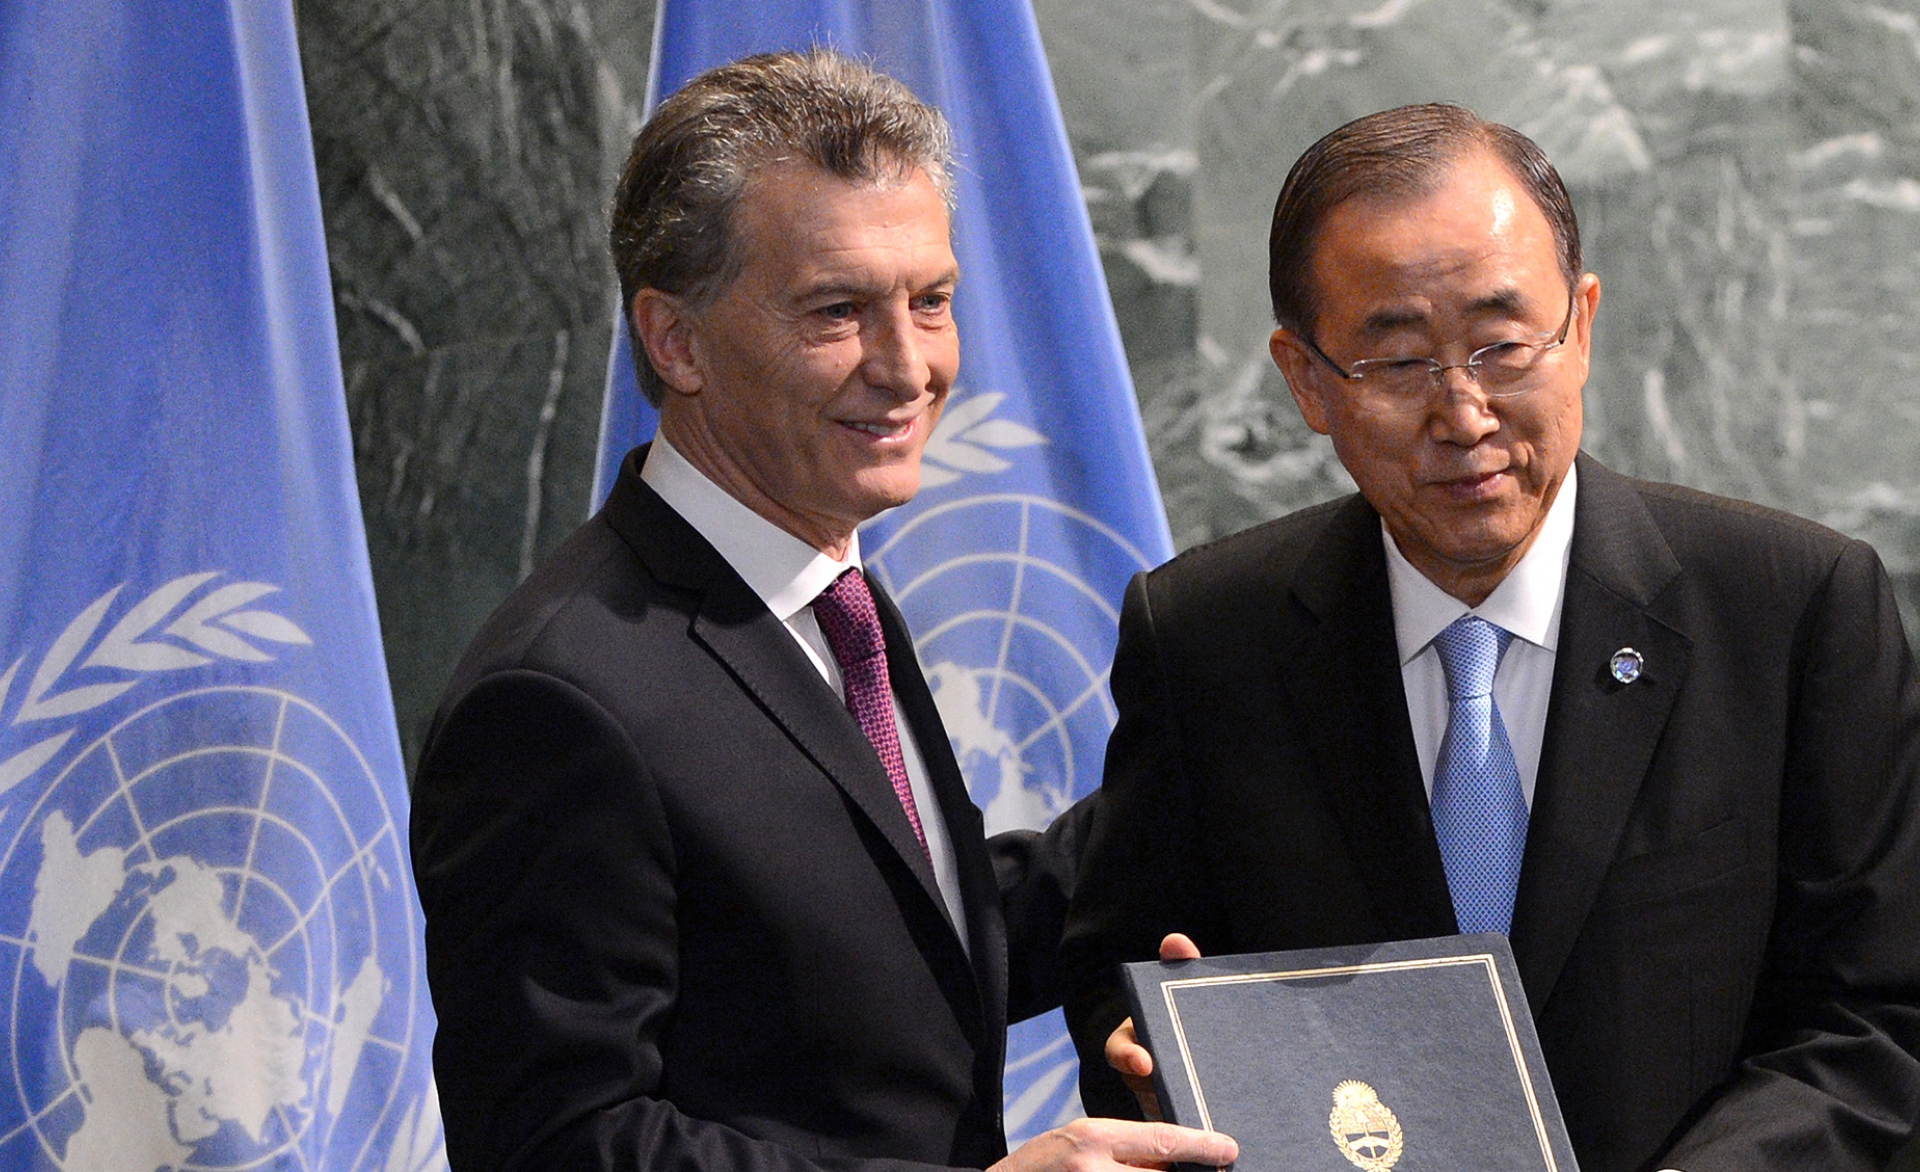 El presidente Macri entregó ante la ONU la adhesión argentina al Acuerdo de París 